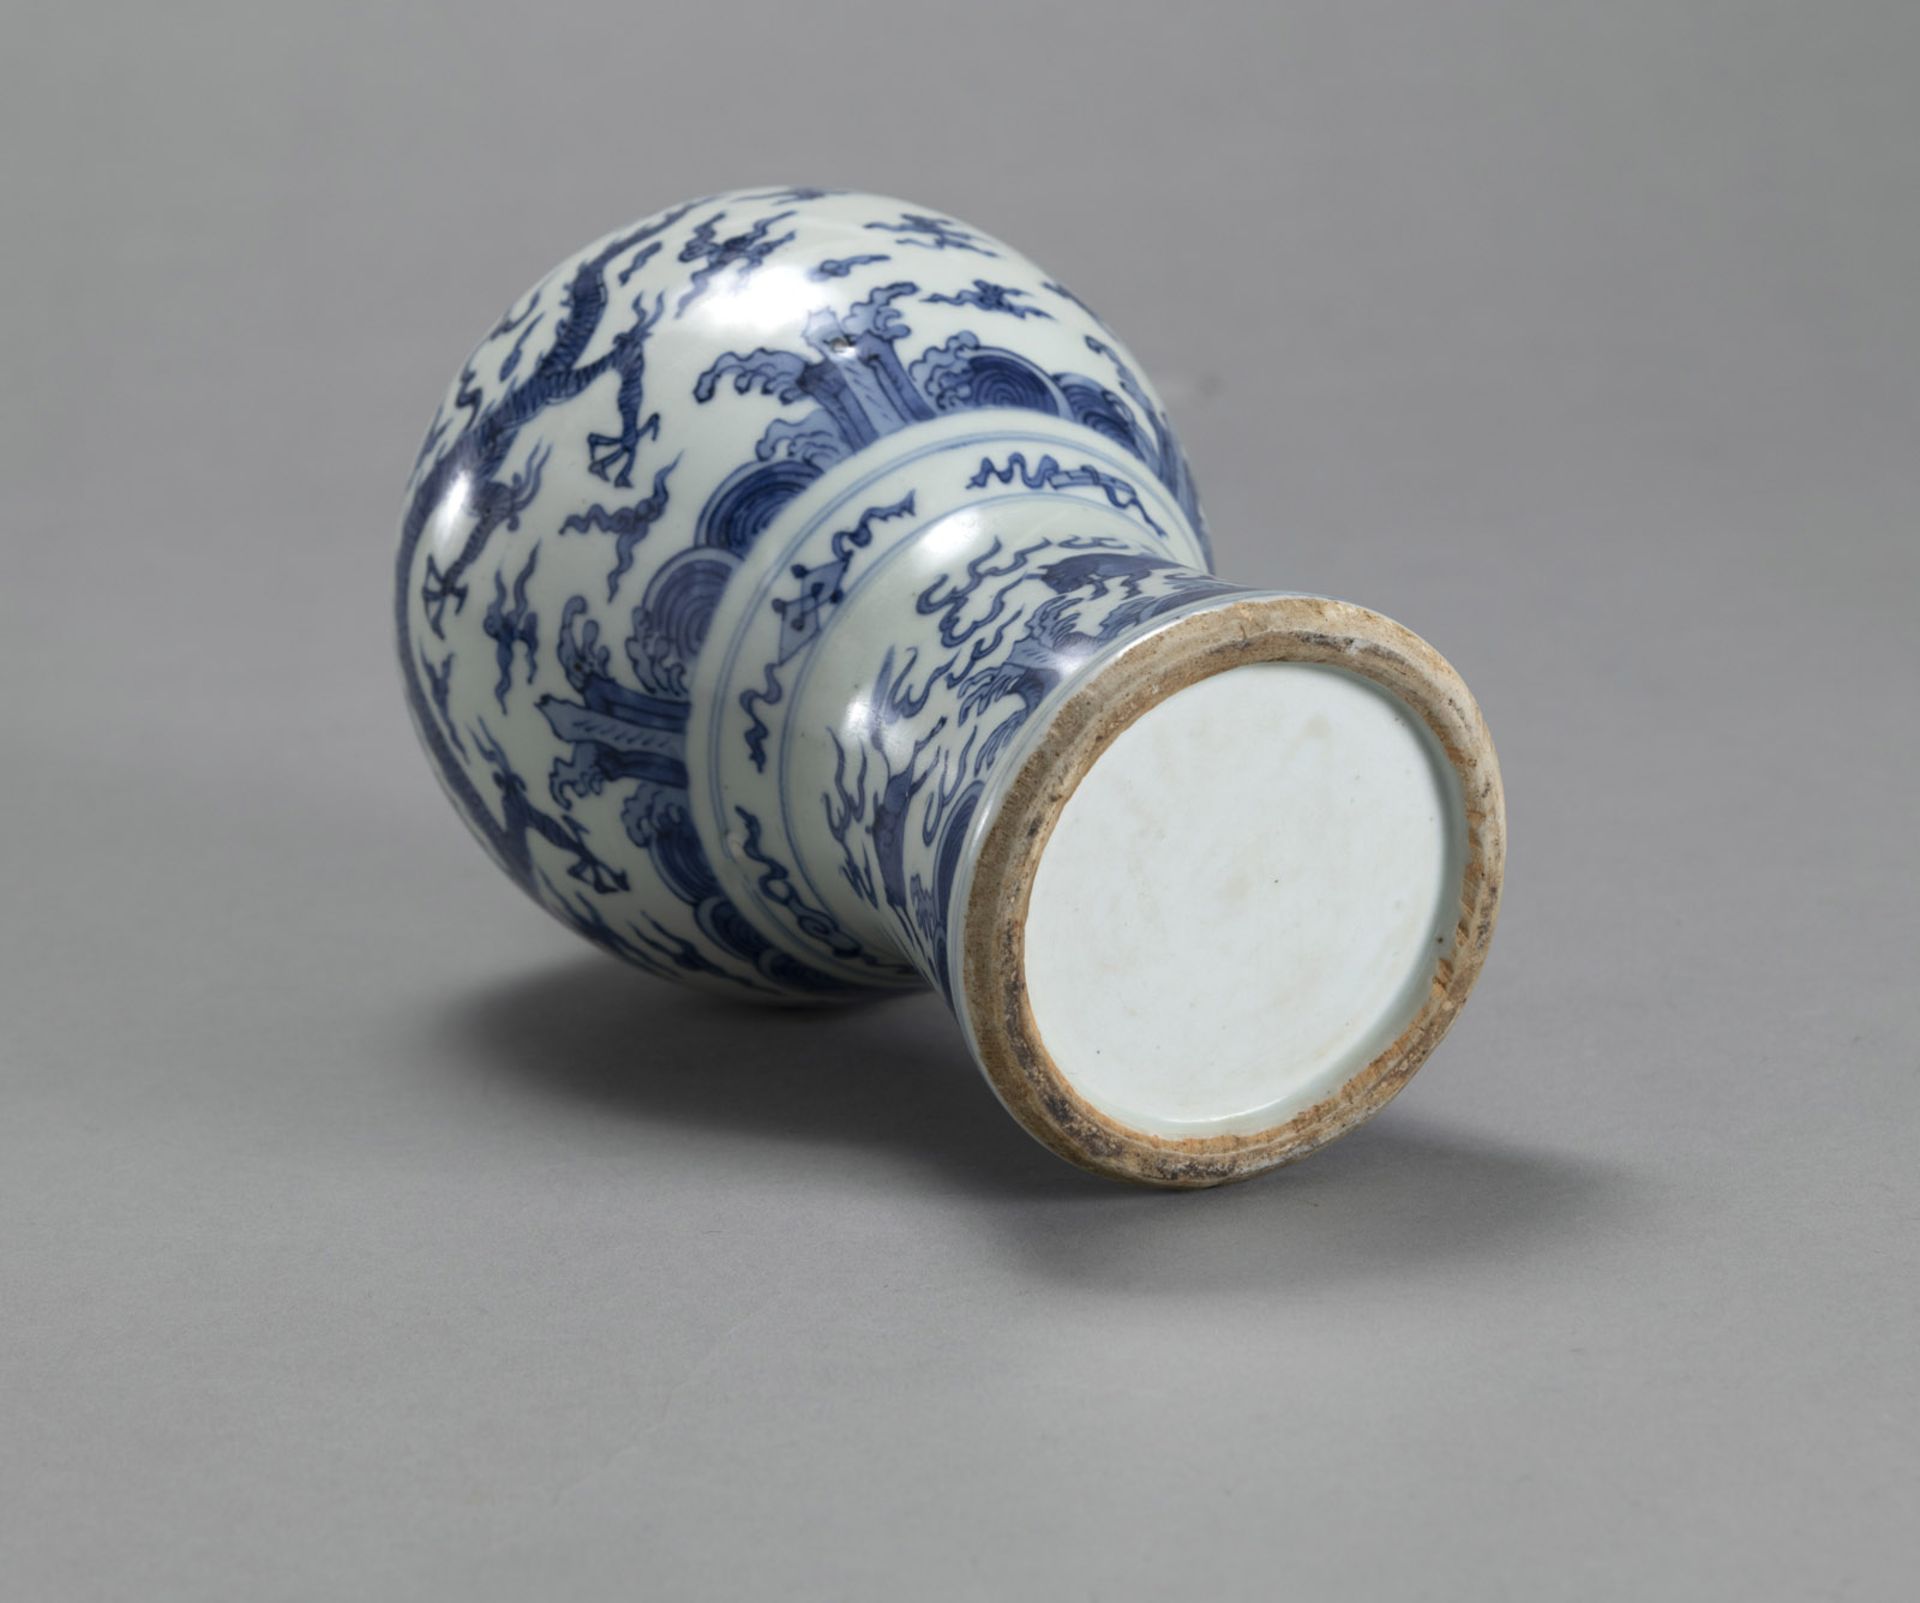 Porzellanvase in 'meiping'-Form mit blau-weißem Dekor eines Drachen und Phönix sowie Pferden - Bild 4 aus 4